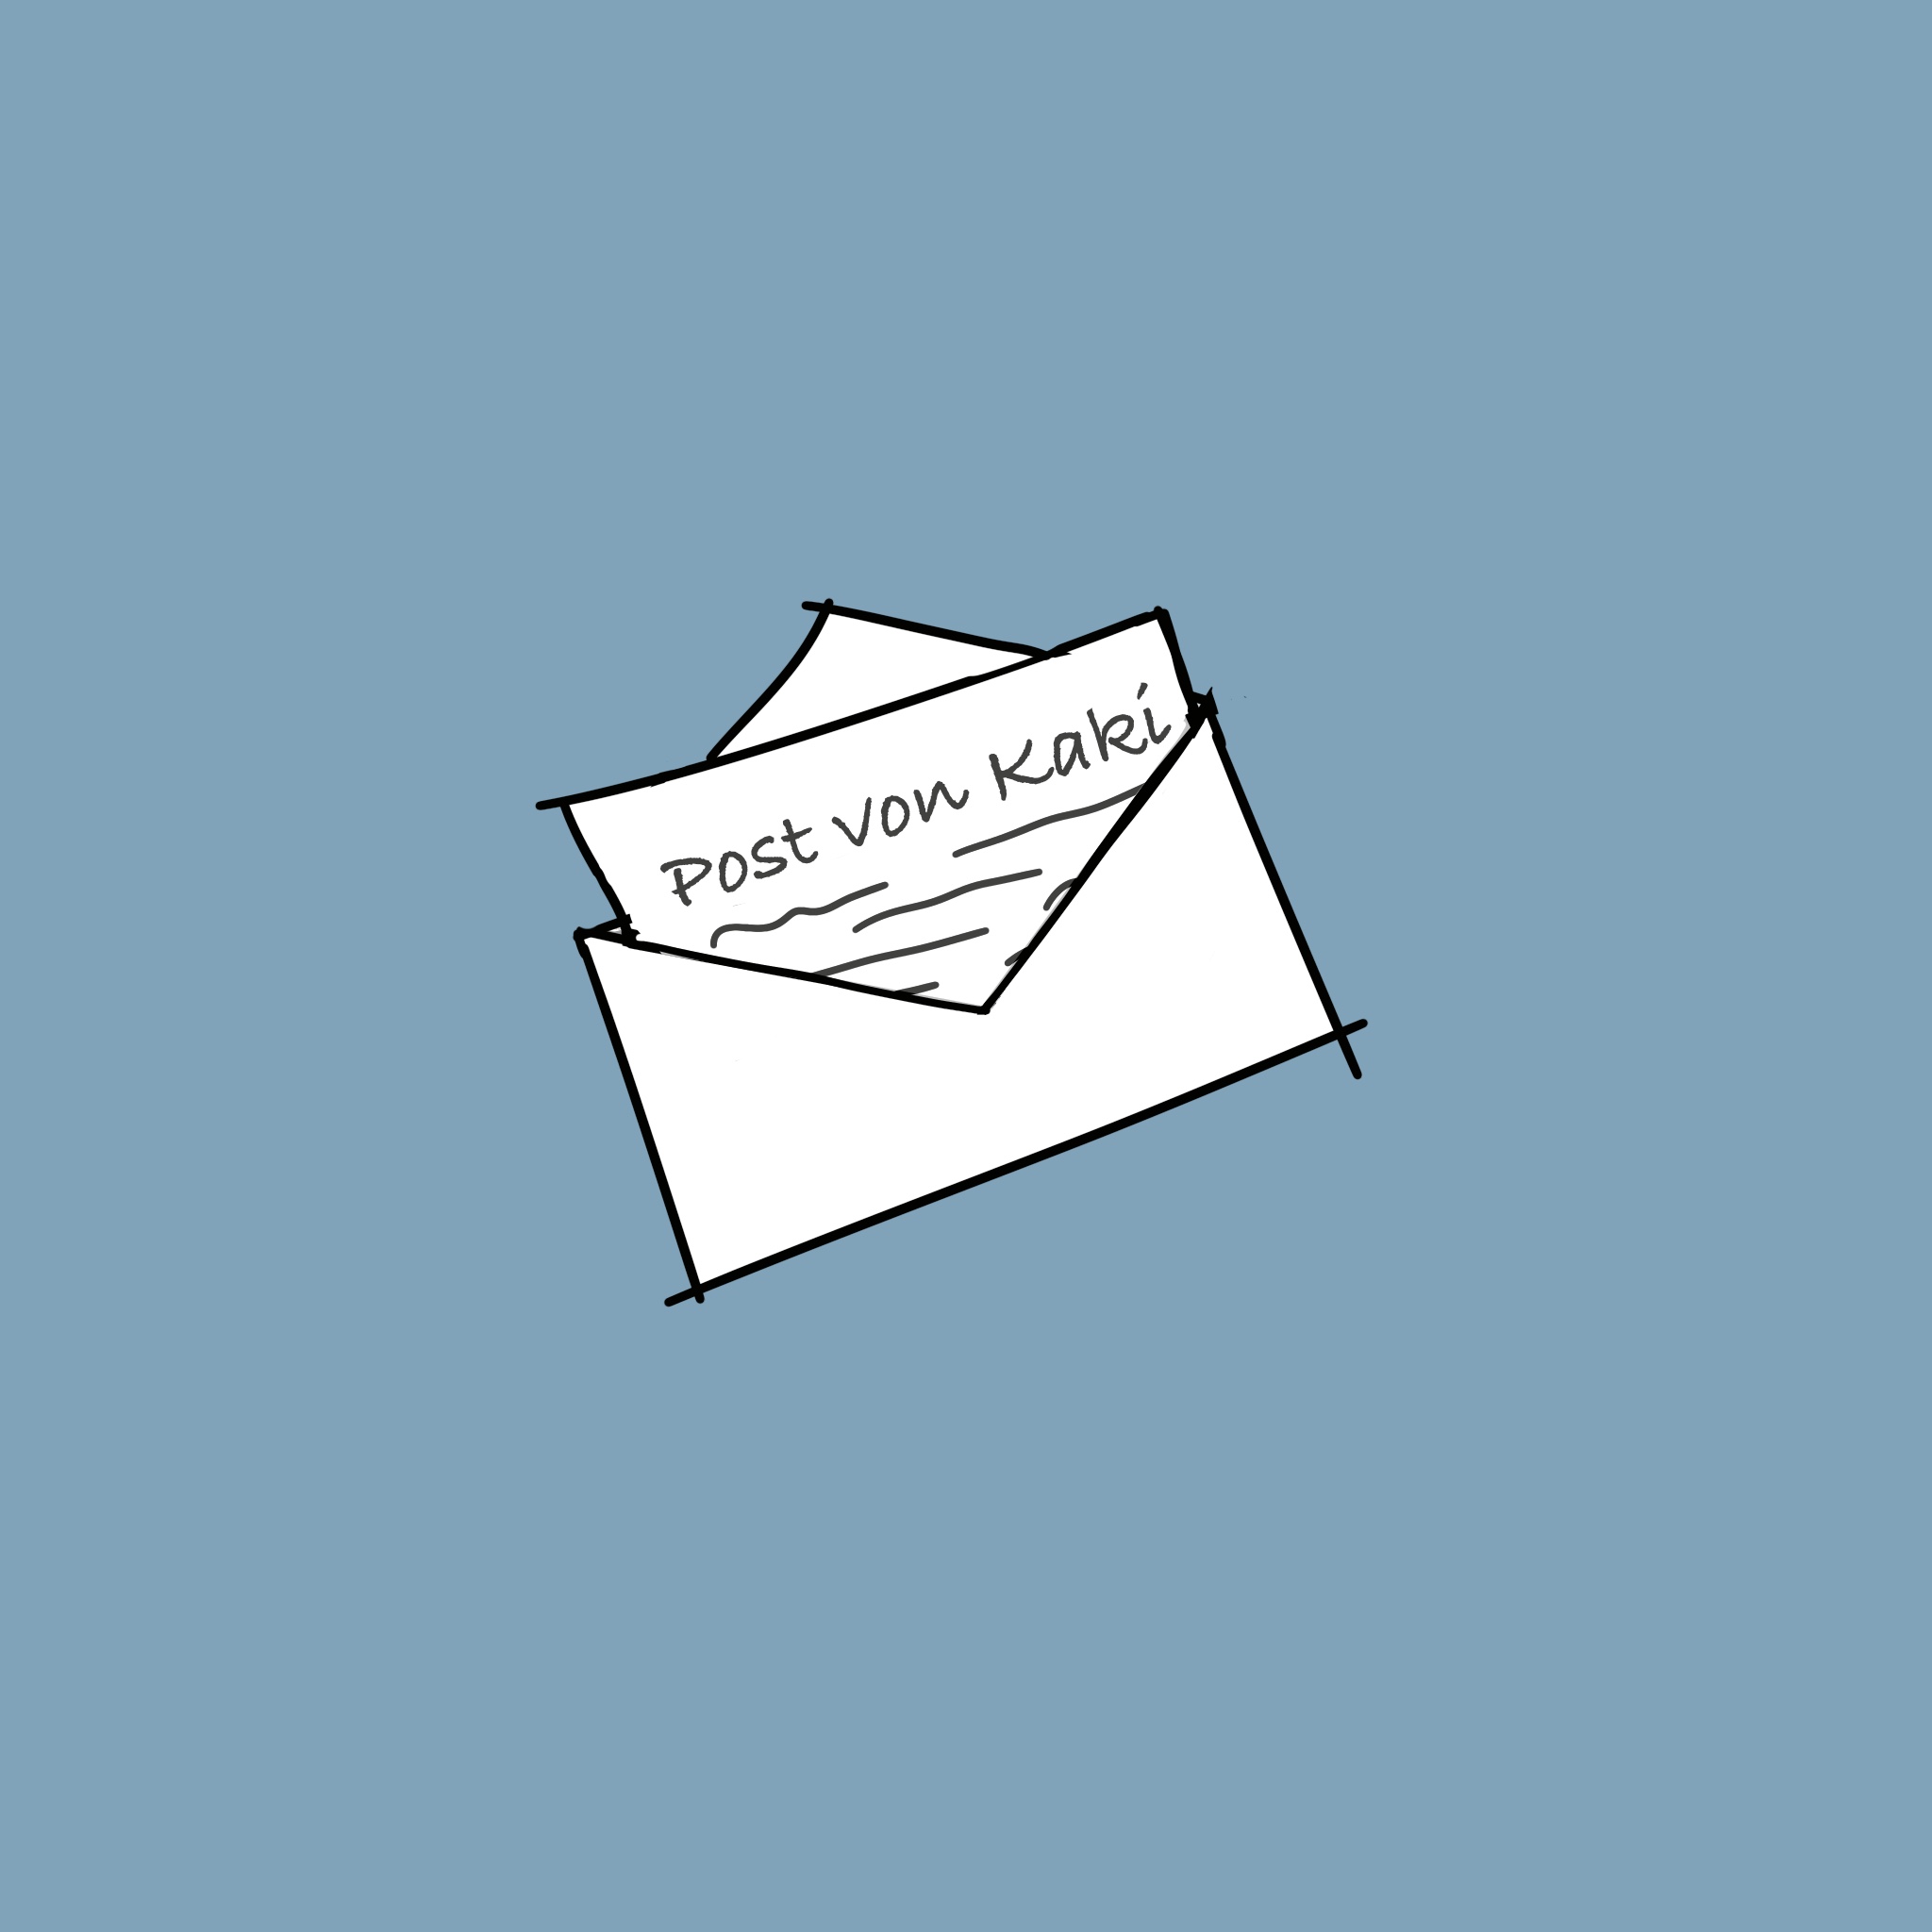 Die Überschrift "Post von Kaki" auf einem Zettel, der aus einem Briefumschlag herauslugt